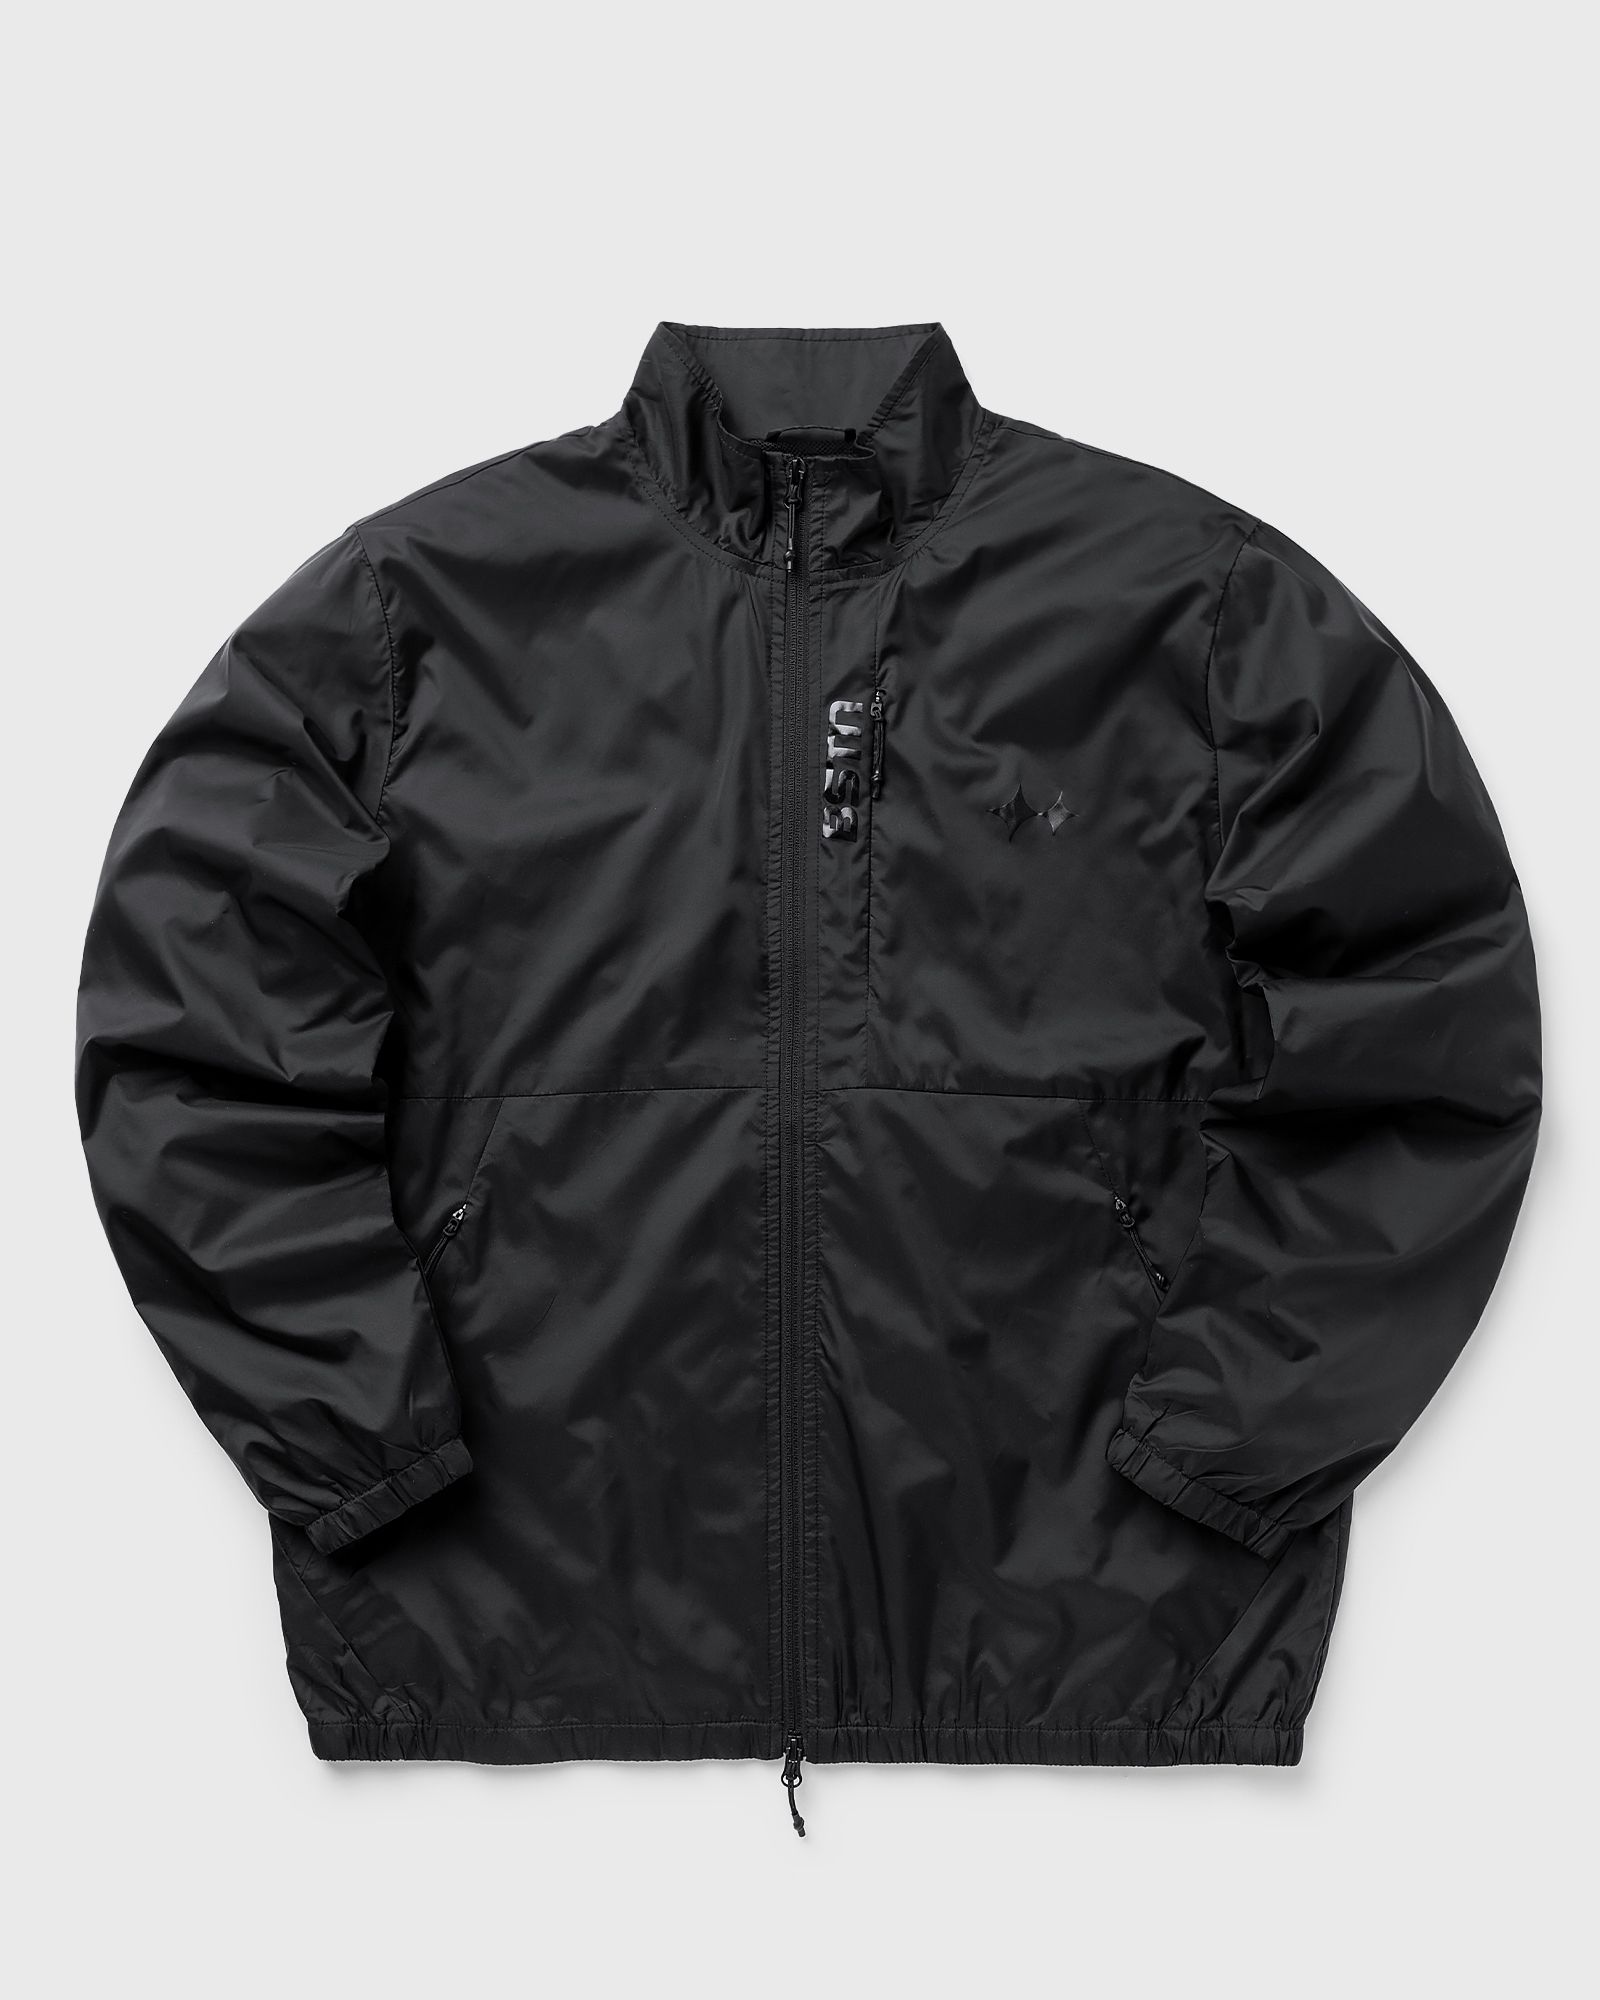 BSTN Brand - track jacket men track jackets black in größe:xxl